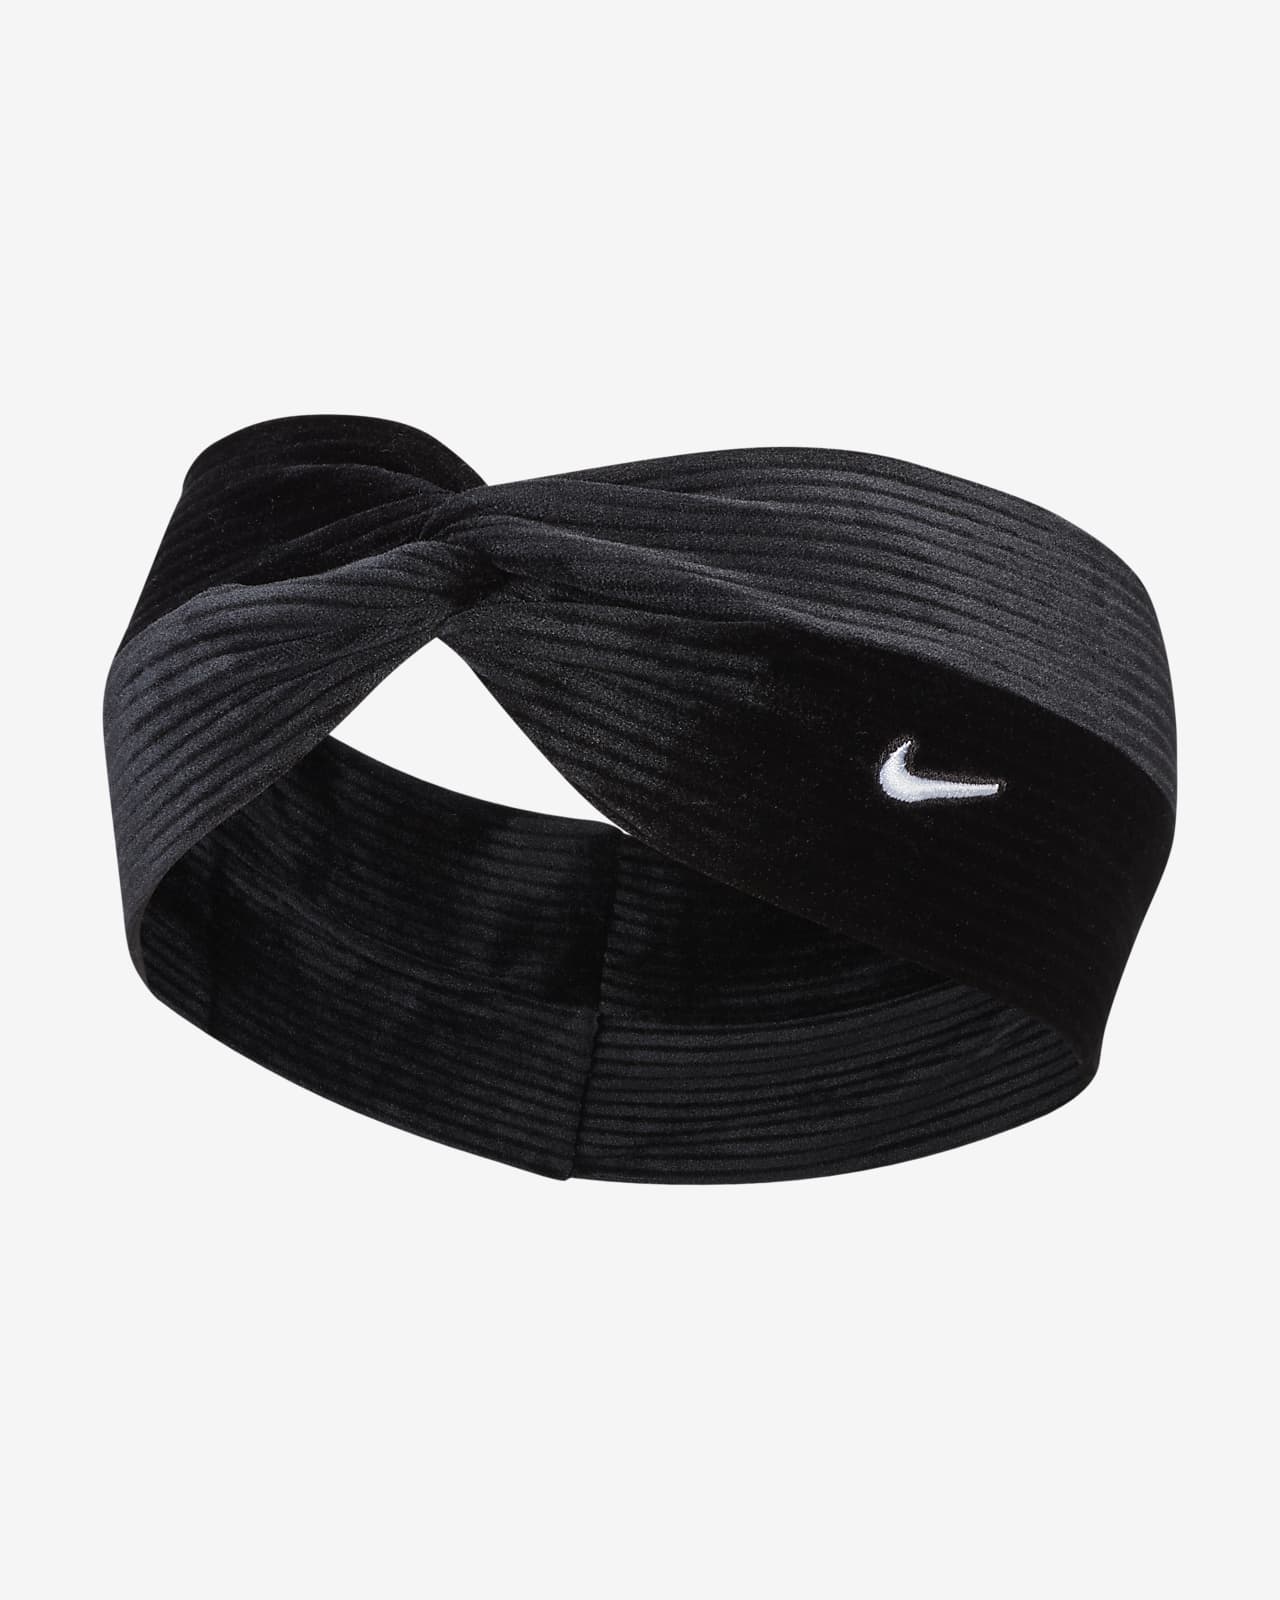 Konsekvenser At håndtere Derive Nike Twist-pandebånd med knude. Nike DK